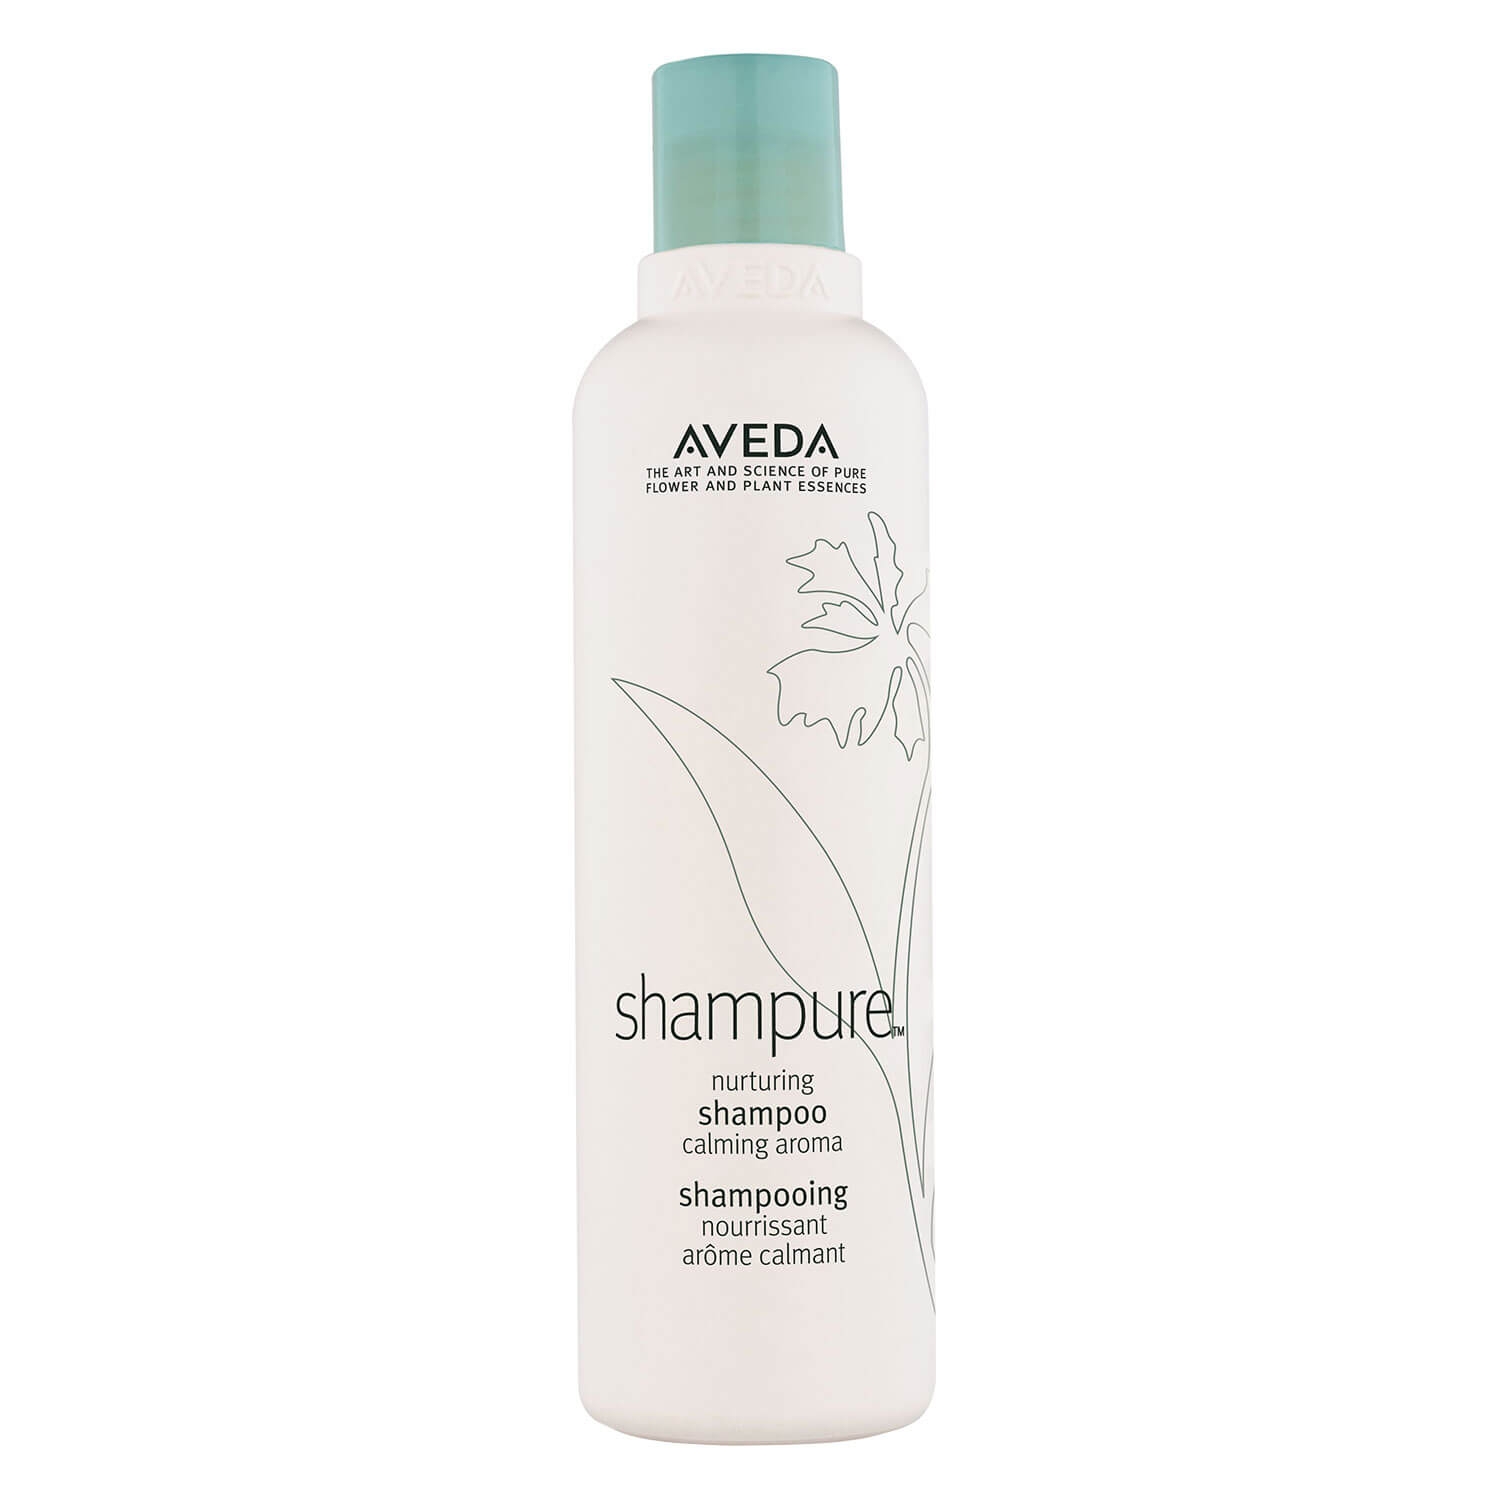 Produktbild von shampure - nurturing shampoo